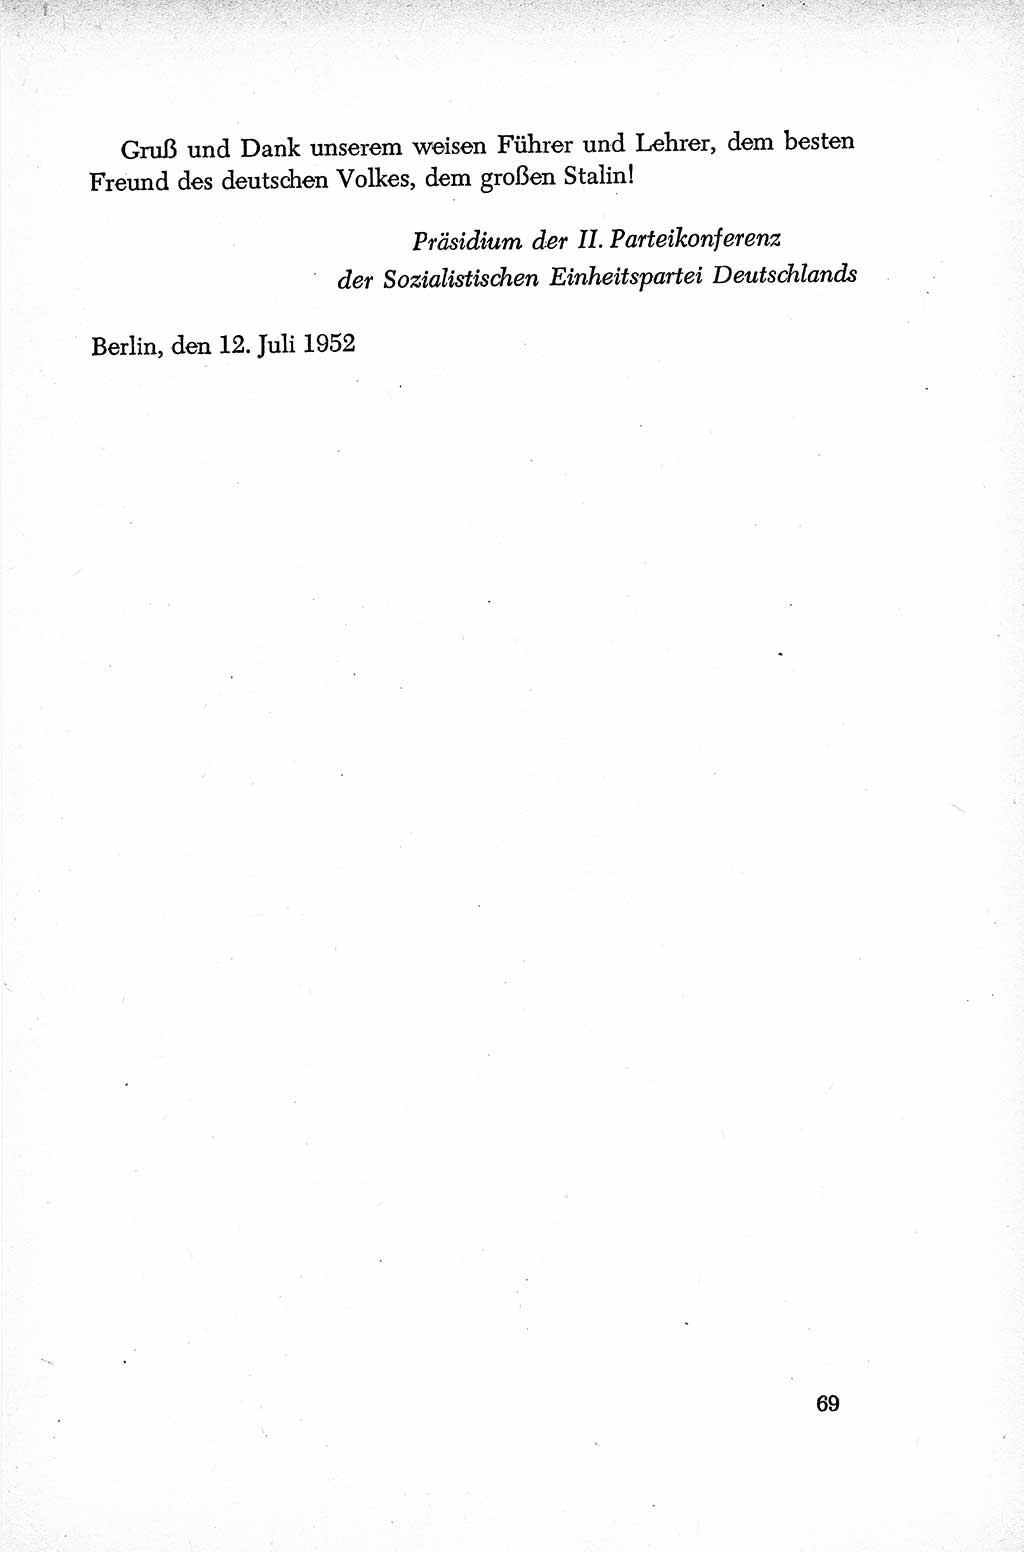 Dokumente der Sozialistischen Einheitspartei Deutschlands (SED) [Deutsche Demokratische Republik (DDR)] 1952-1953, Seite 69 (Dok. SED DDR 1952-1953, S. 69)